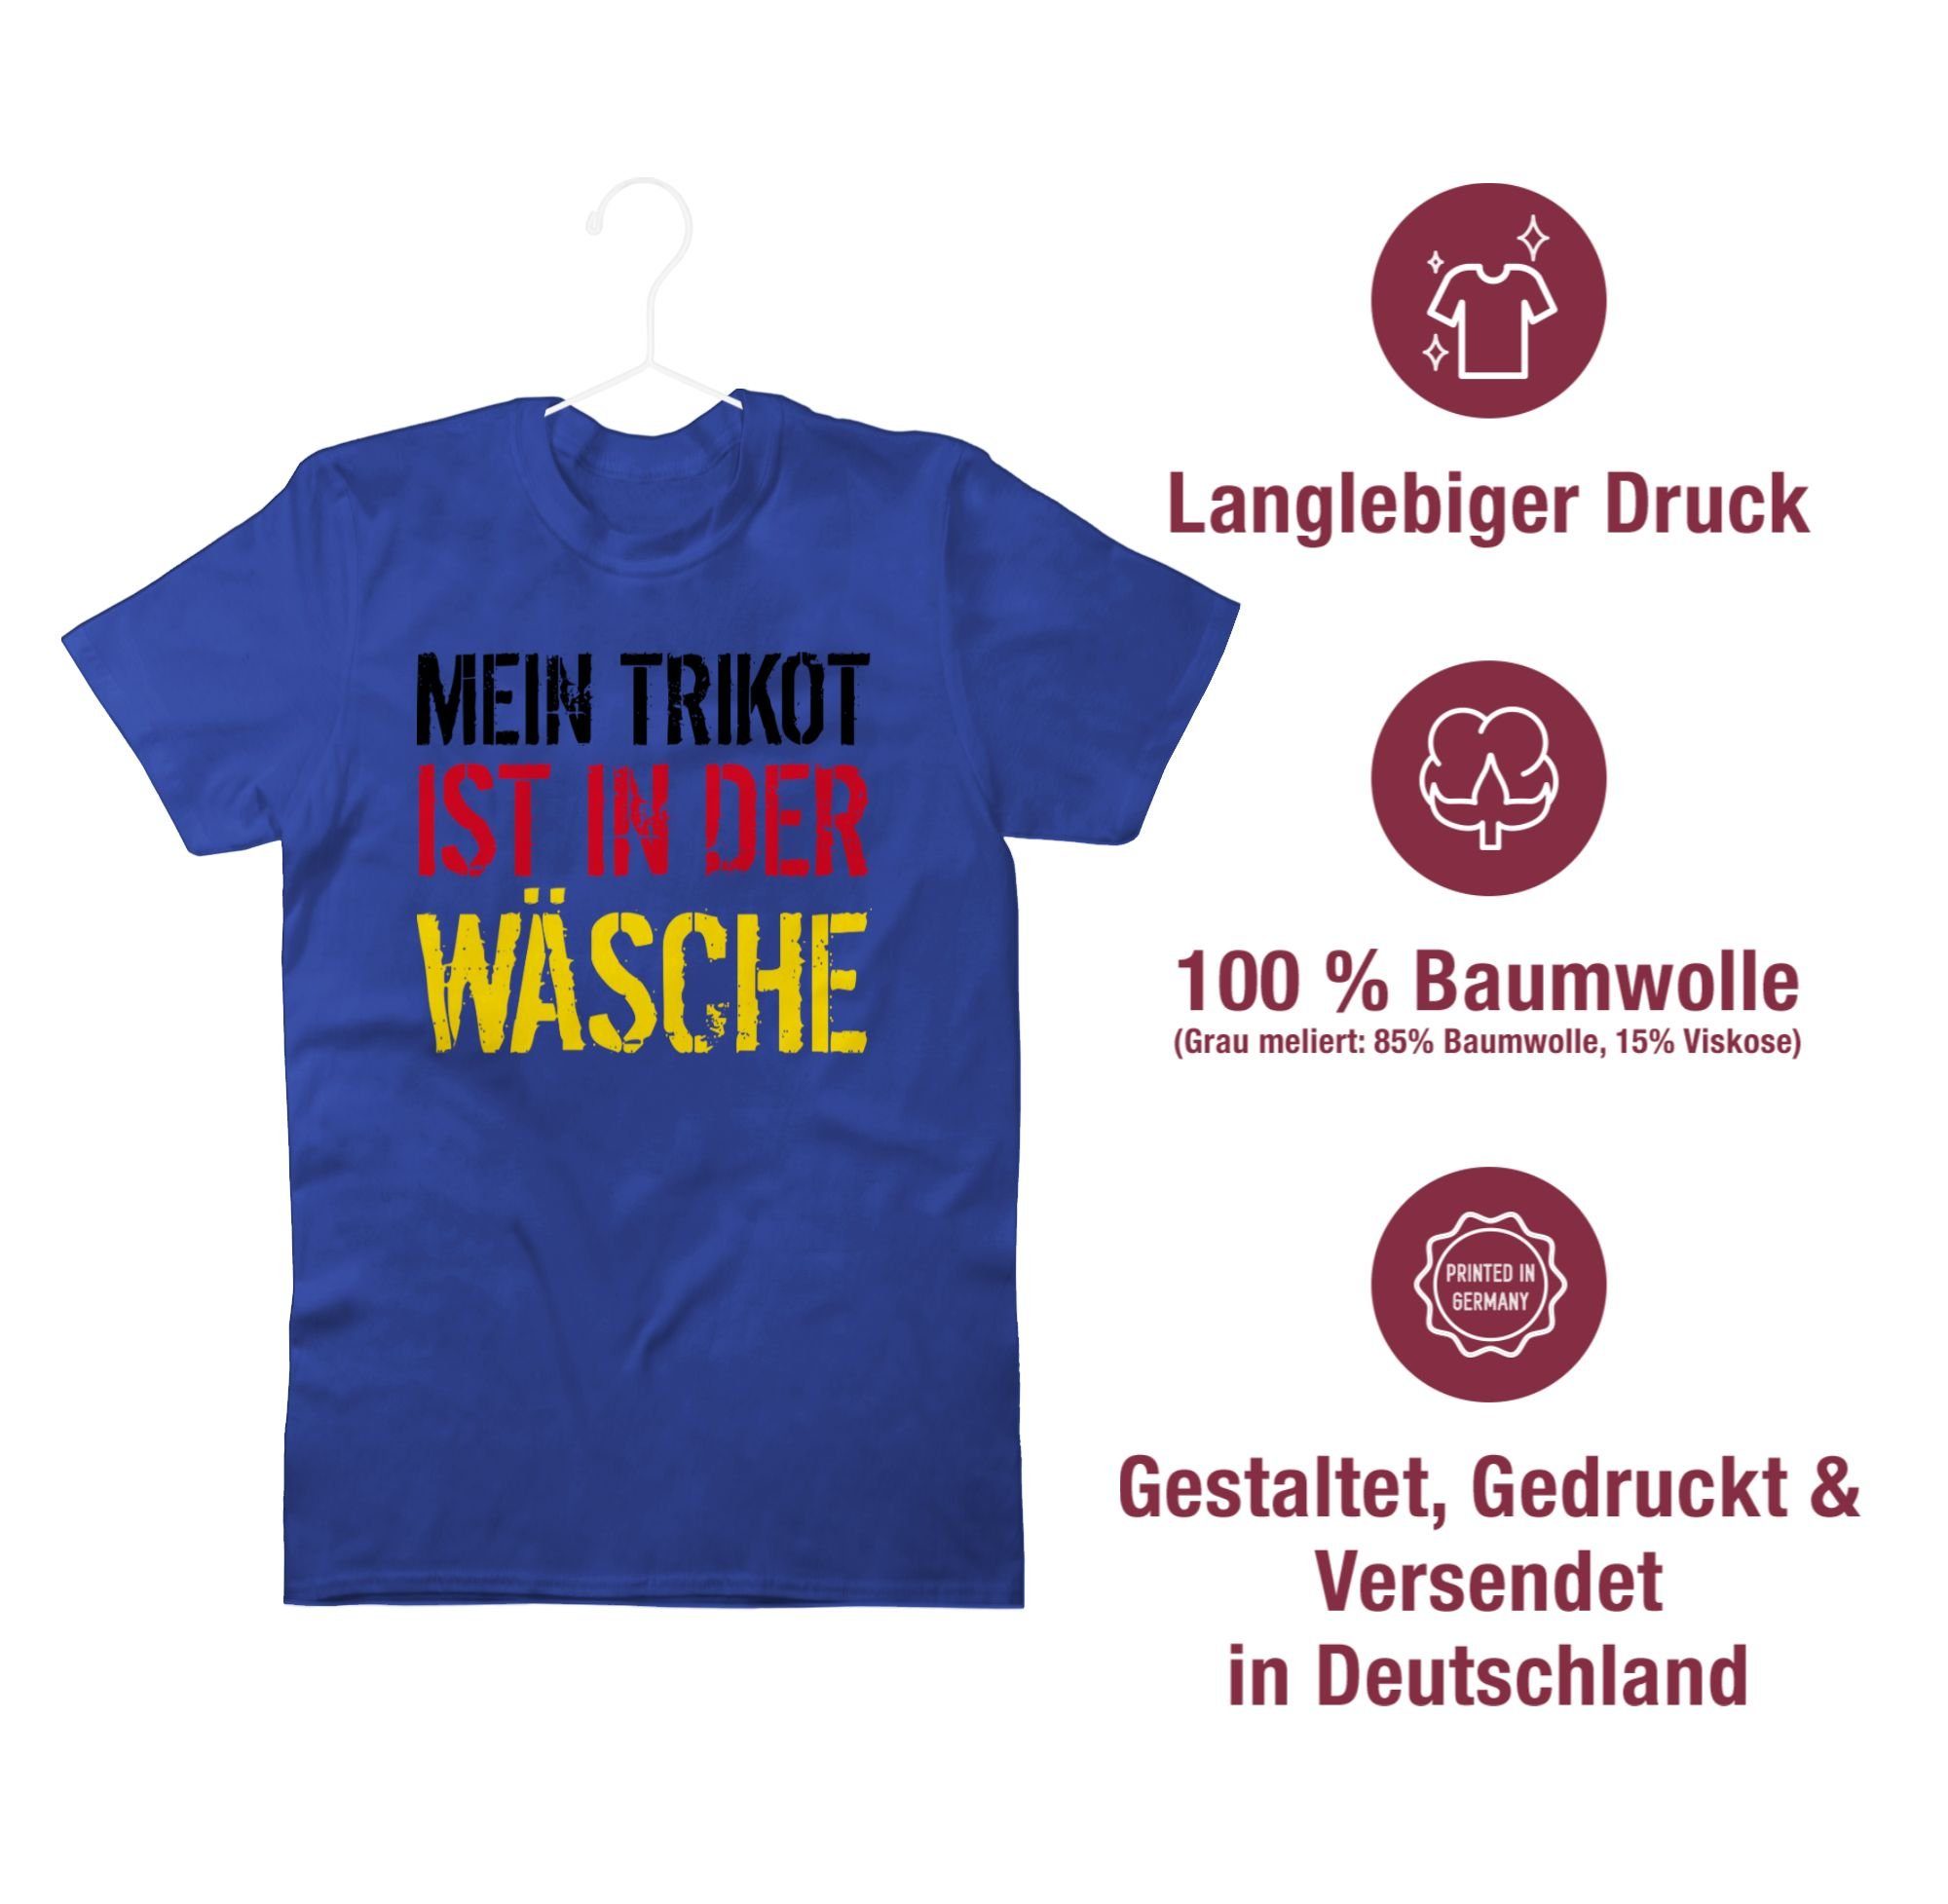 Mein ist T-Shirt Fussball Trikot Wäsche Shirtracer EM 3 Deutschland 2024 Royalblau der in WM